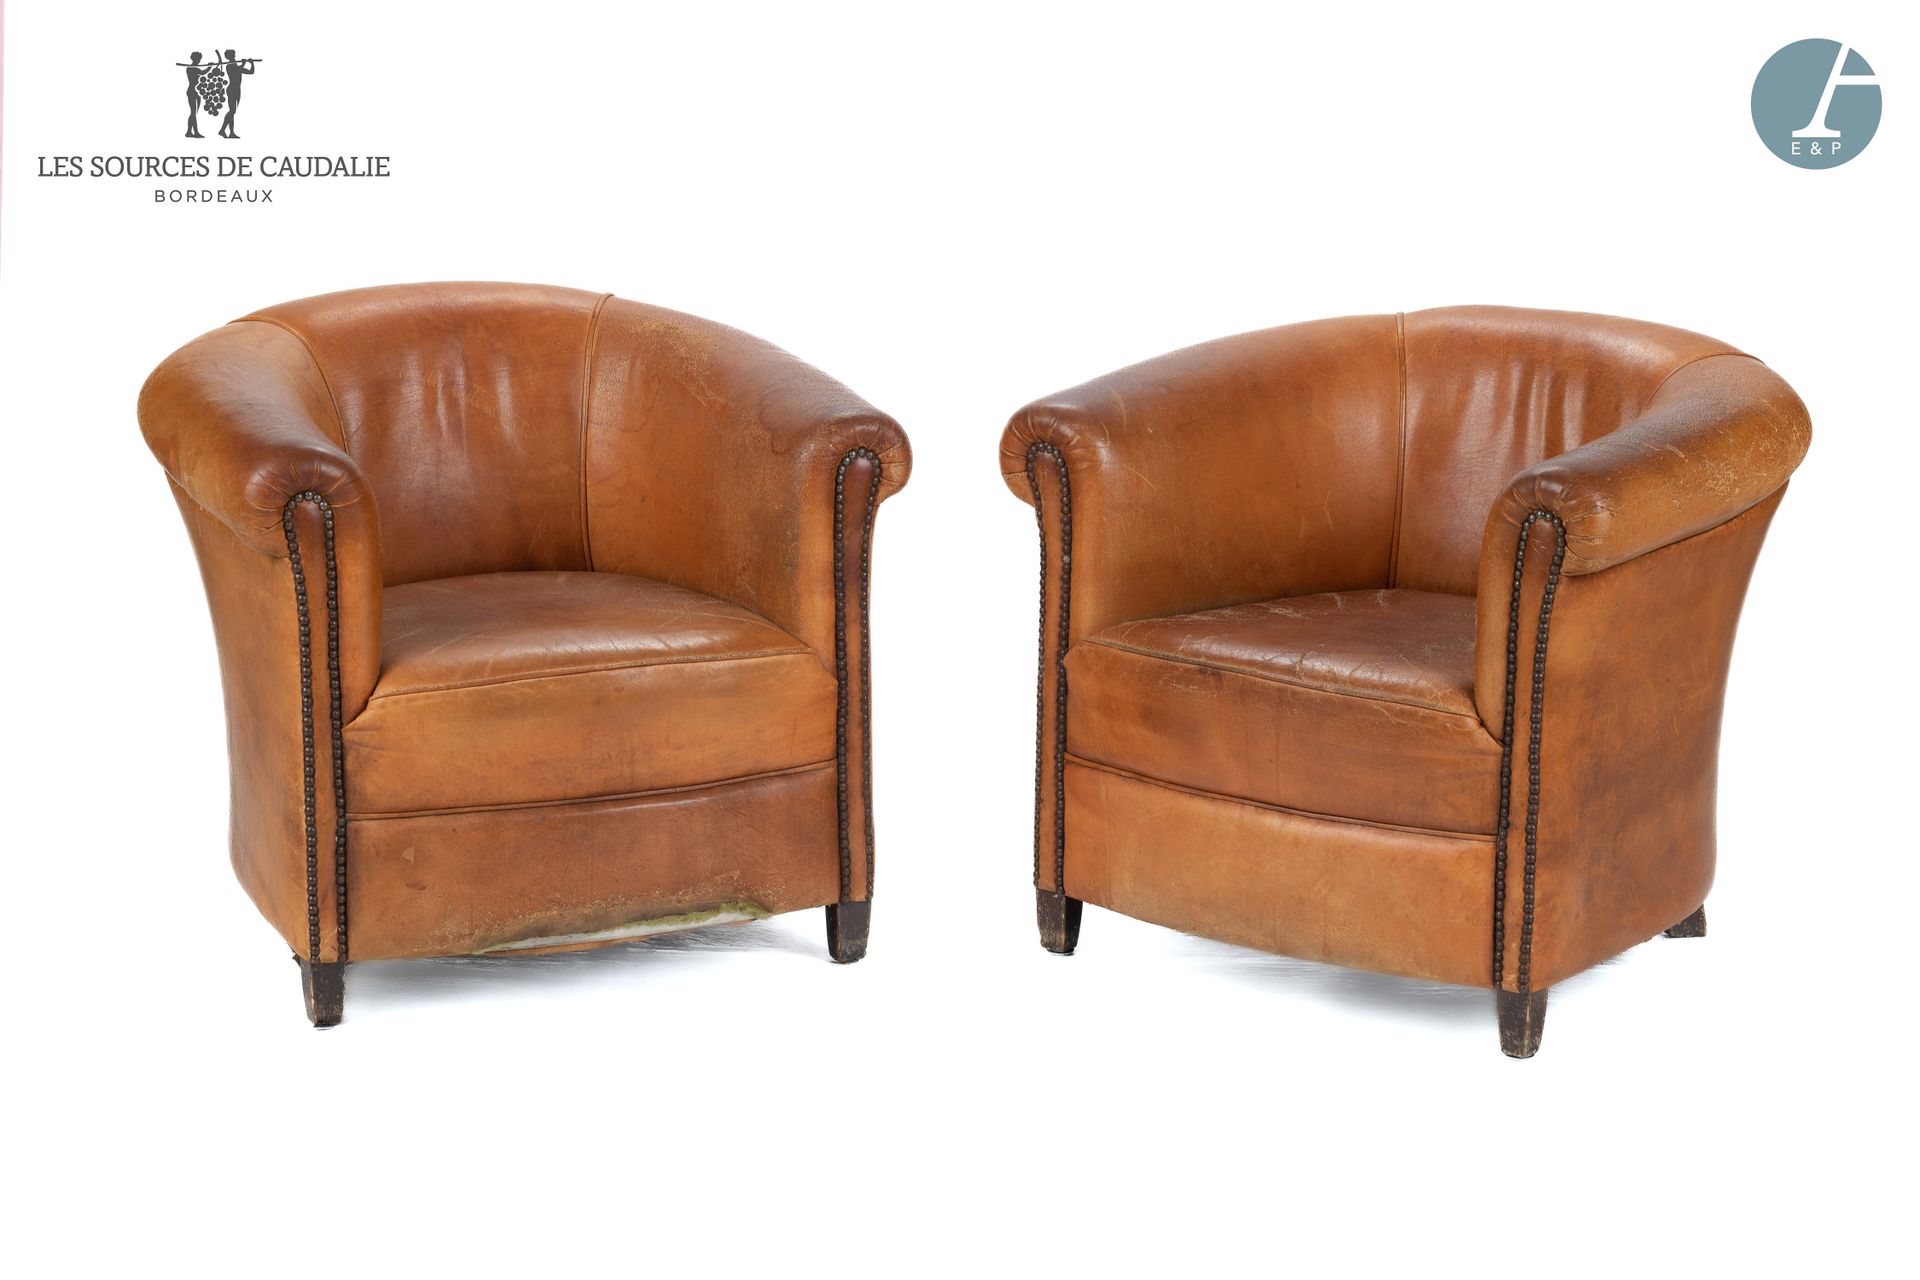 Null 来自Sources de Caudalie
一对棕色皮革俱乐部椅
使用状况 - 两把扶手椅中的一把有损坏和丢失的部件
高：69厘米 - 宽：79厘米 &hellip;